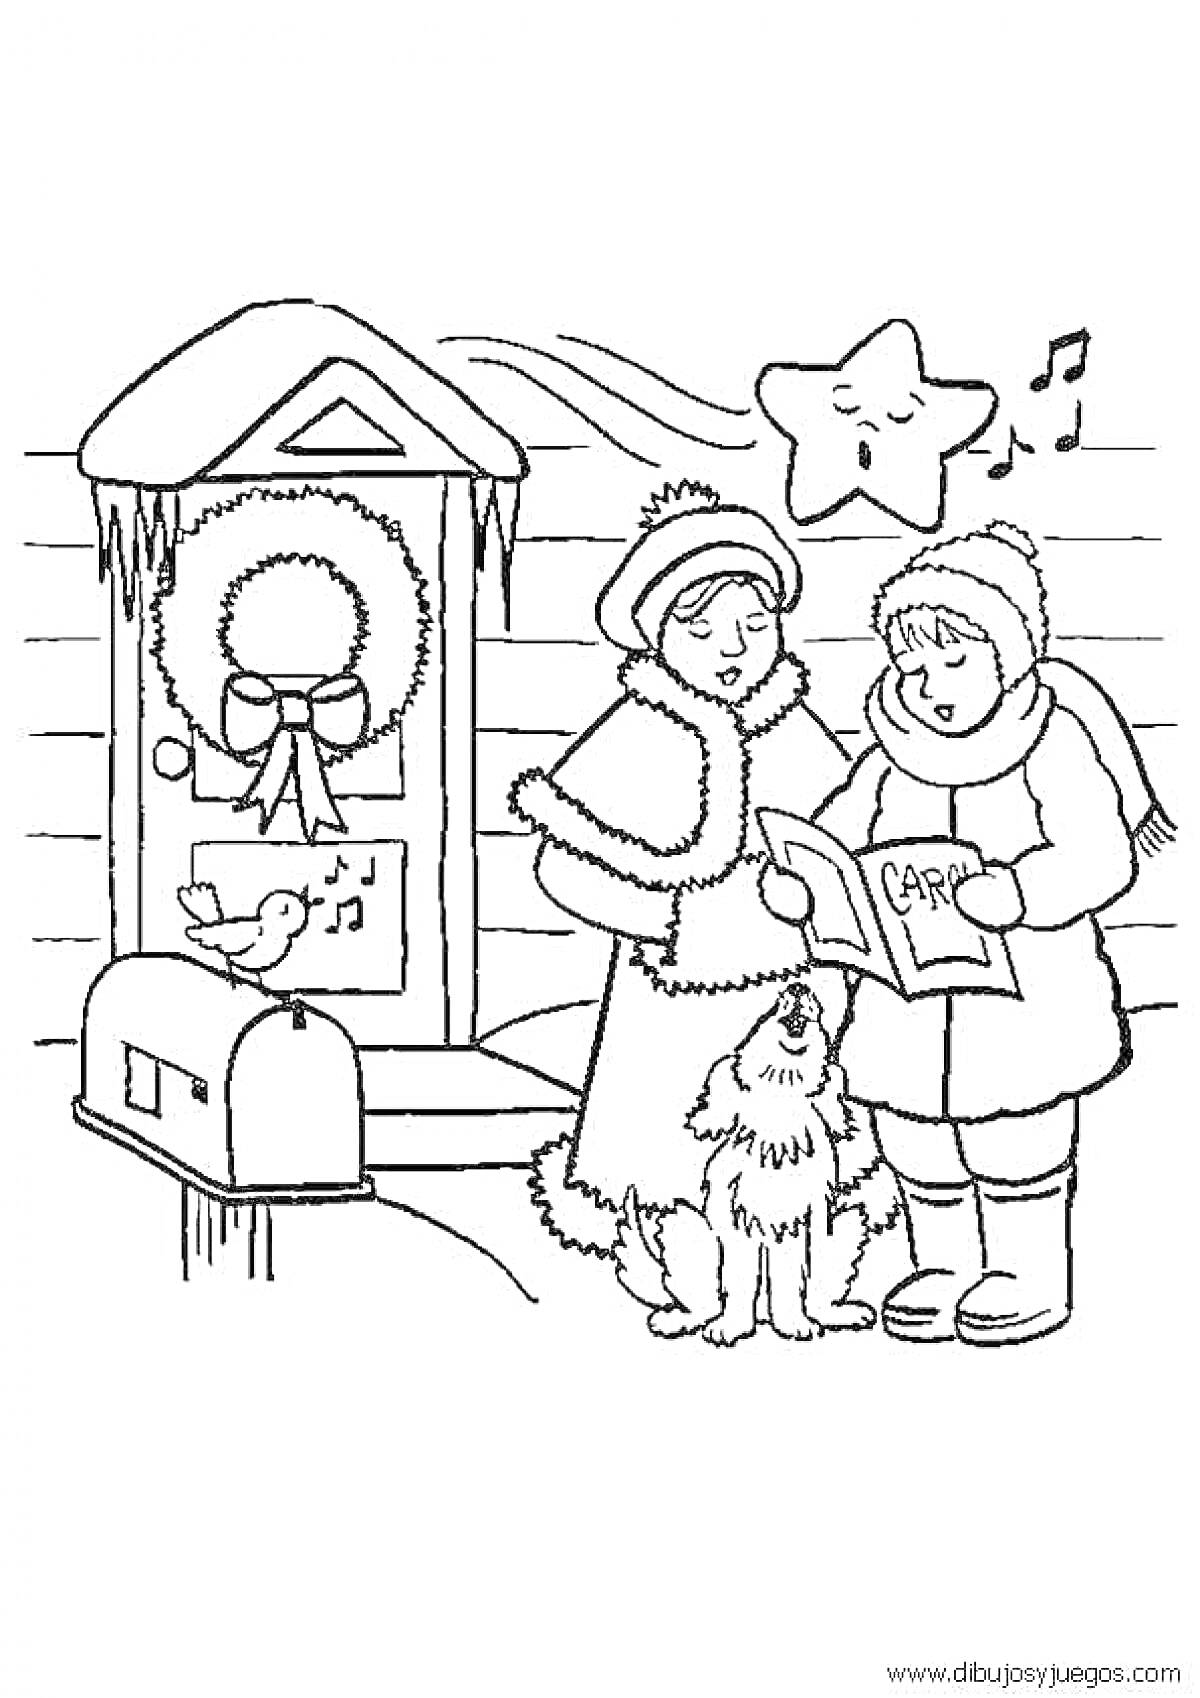 Раскраска Дети поют колядки на крыльце, украшенном венком, рядом с почтовым ящиком и собакой